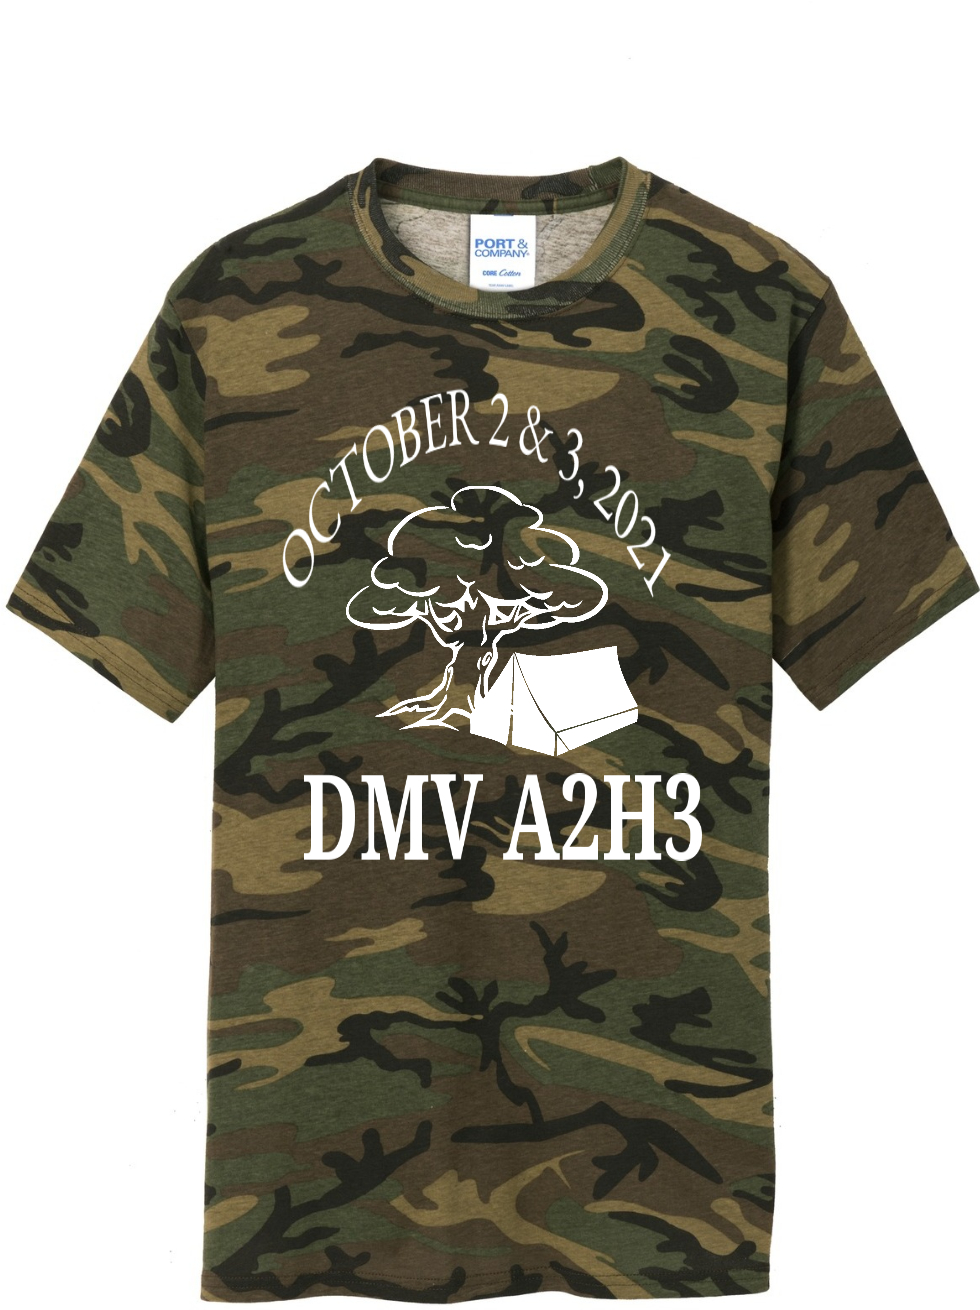 DMV A2H3